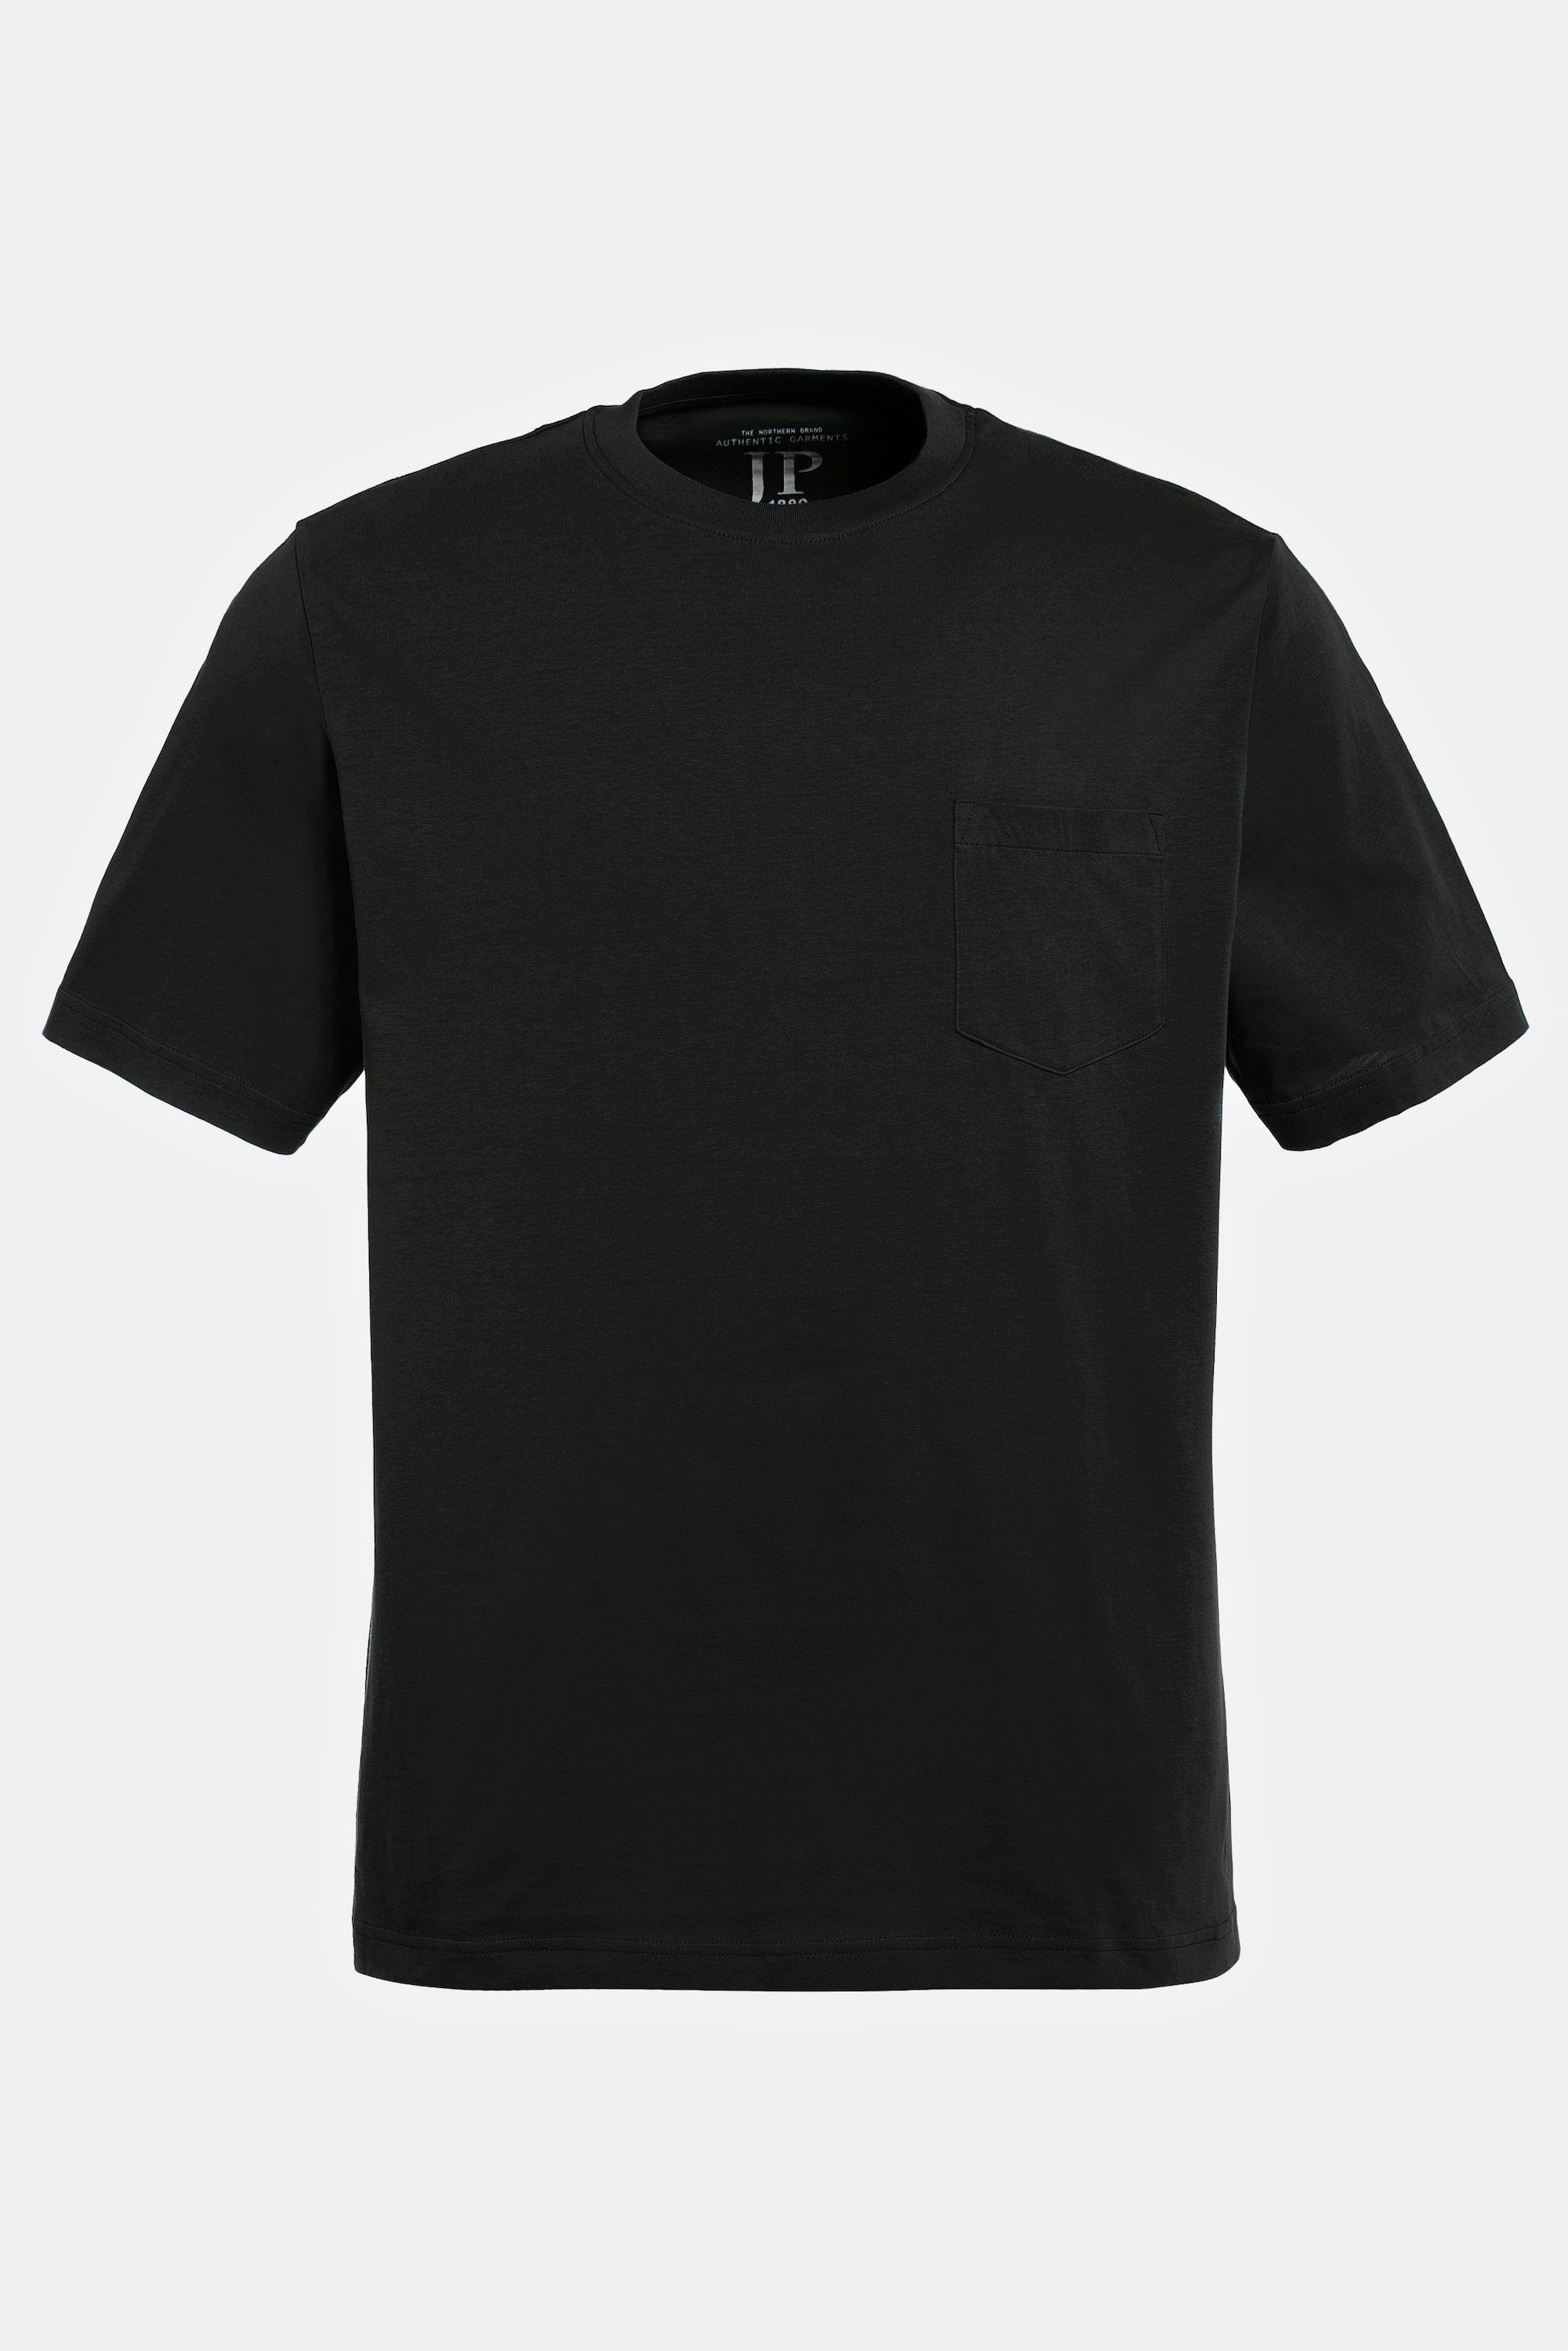 Halbarm JP1880 Brusttasche schwarz T-Shirt T-Shirt